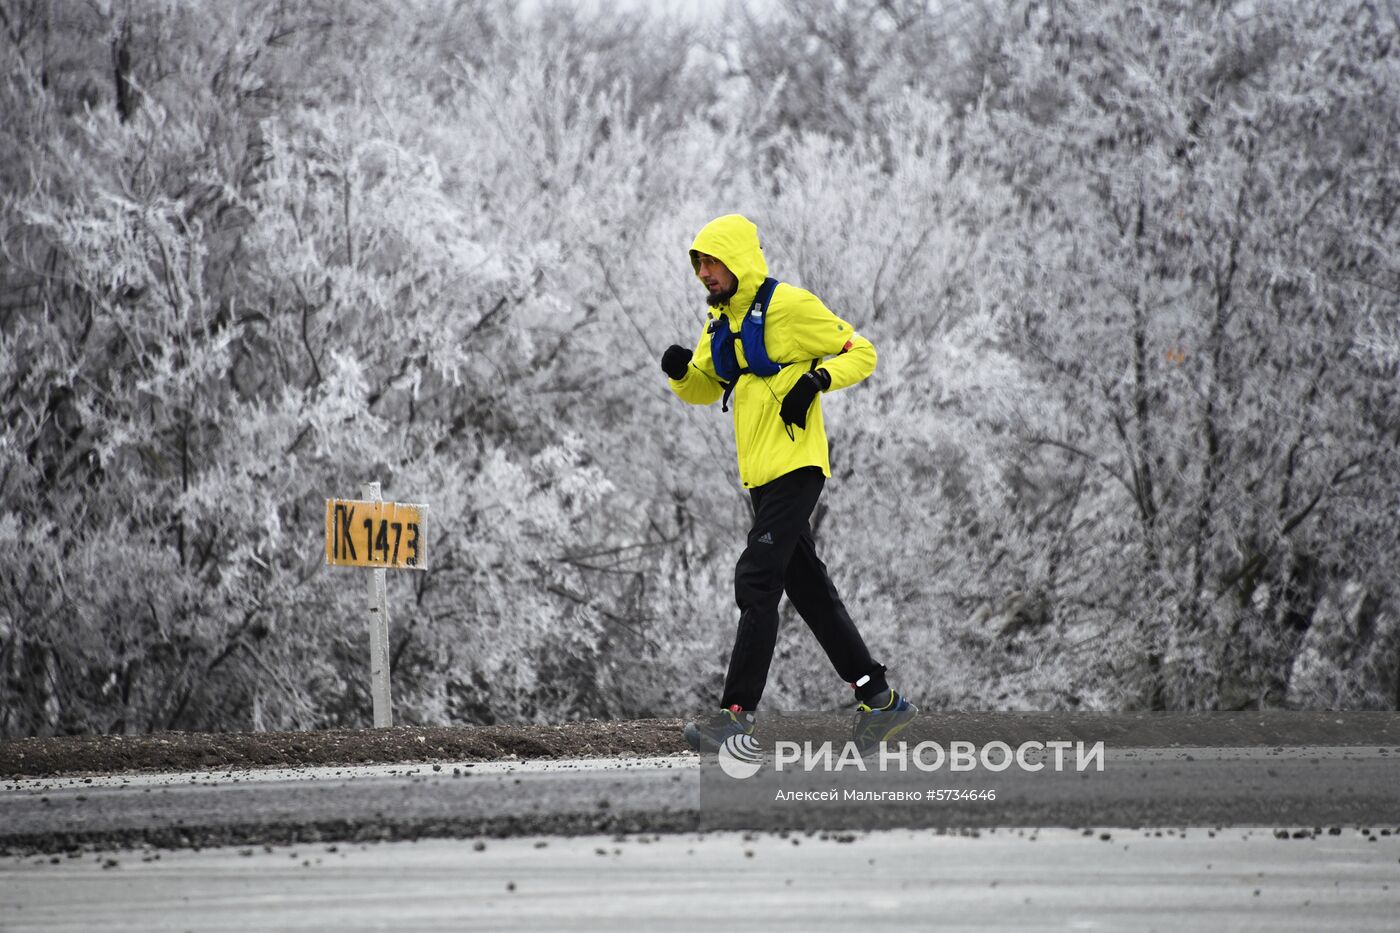 Ультрамарафонец начал 190-километровый забег по новой трассе "Таврида" в Крыму